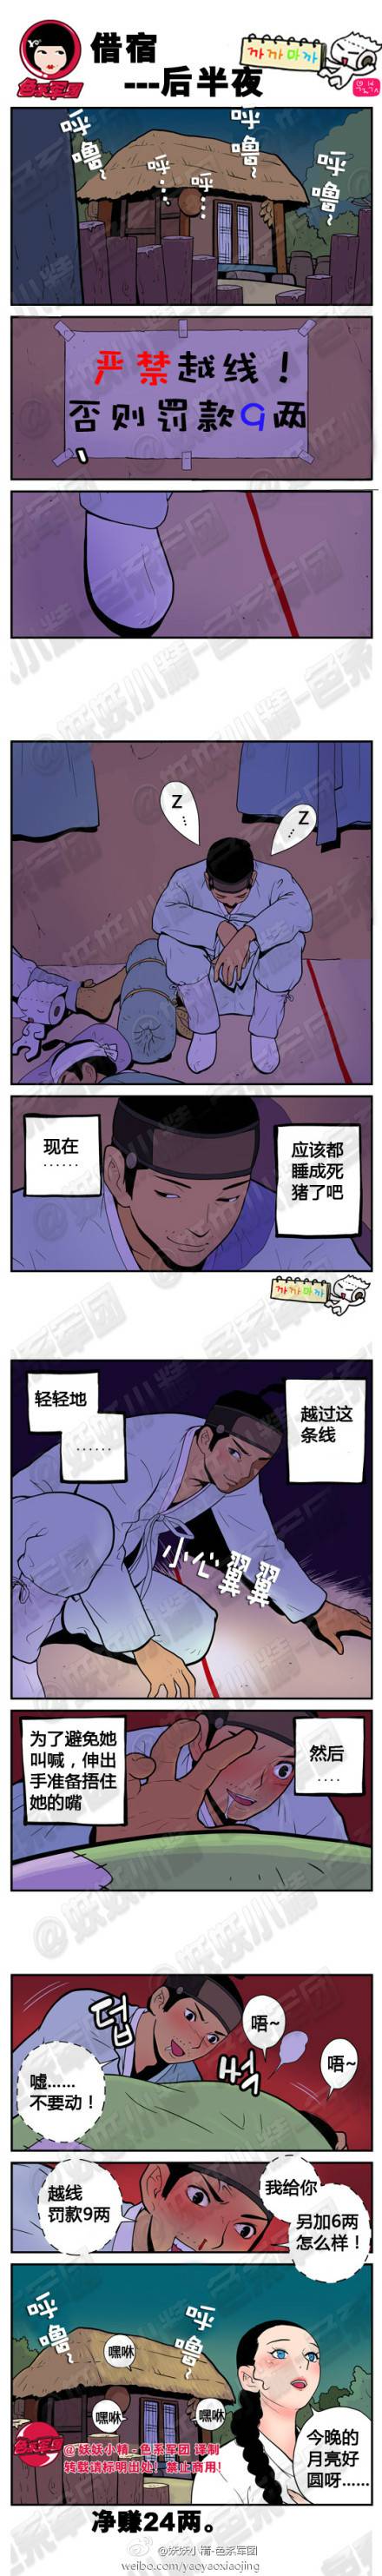 邪恶漫画爆笑囧图第371刊：新故事